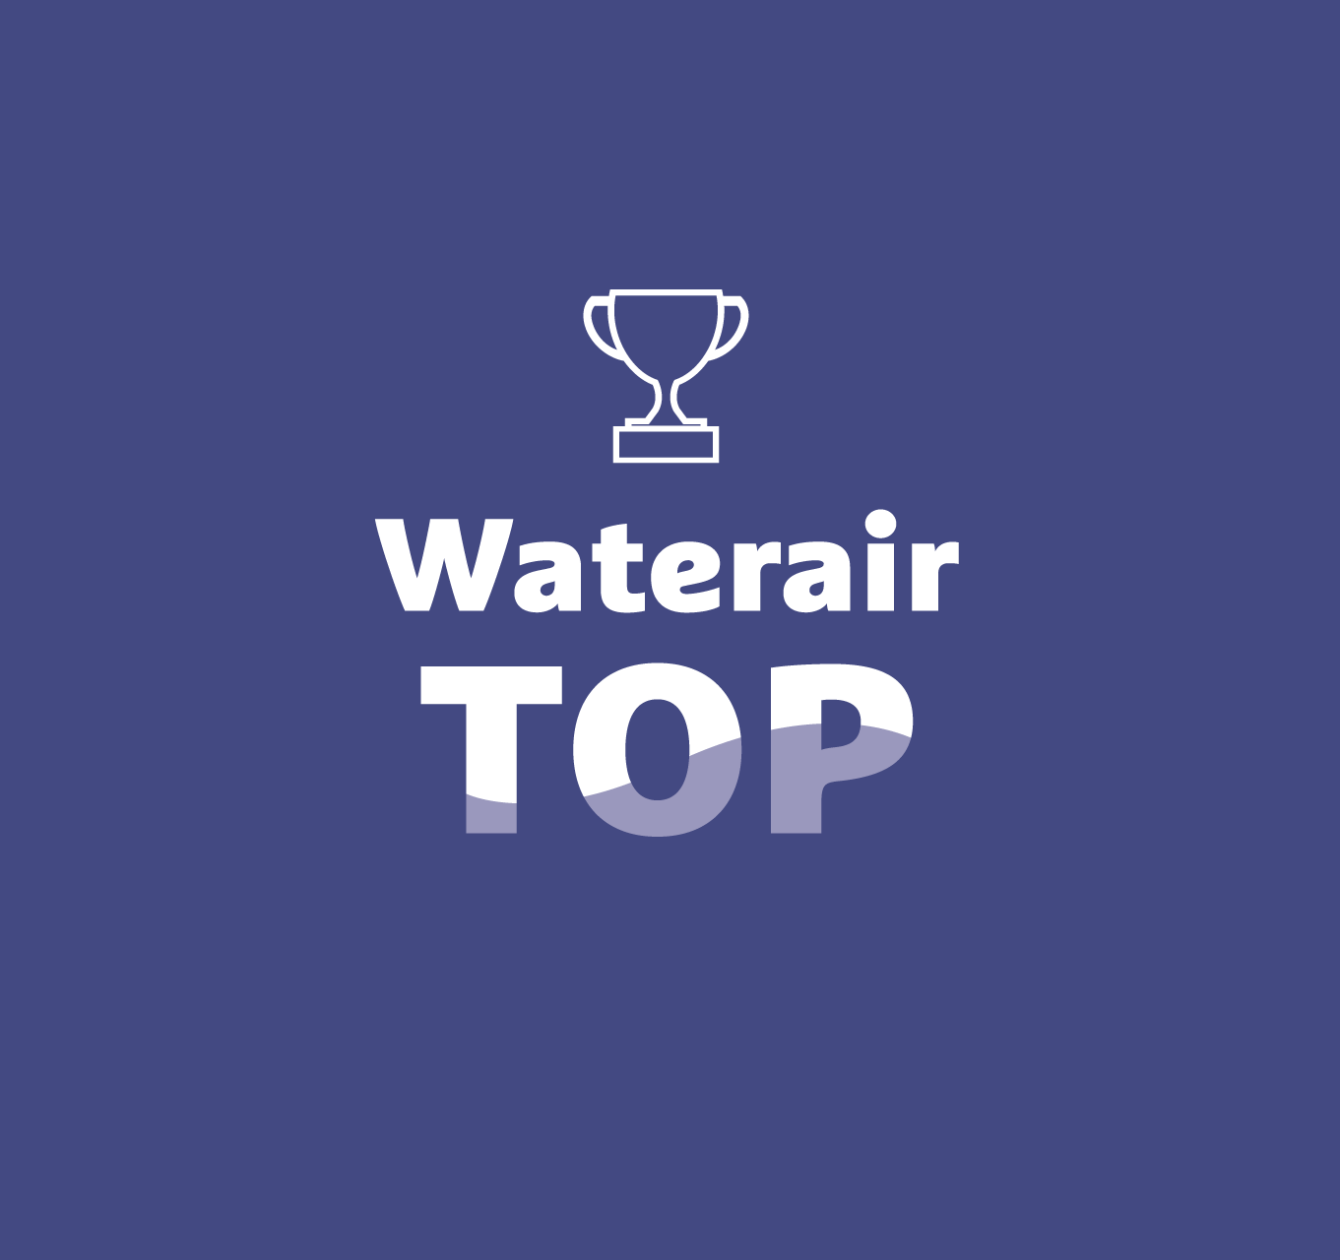 Waterair Top: Waterair-Spitzentechnologie zu Ihren Diensten